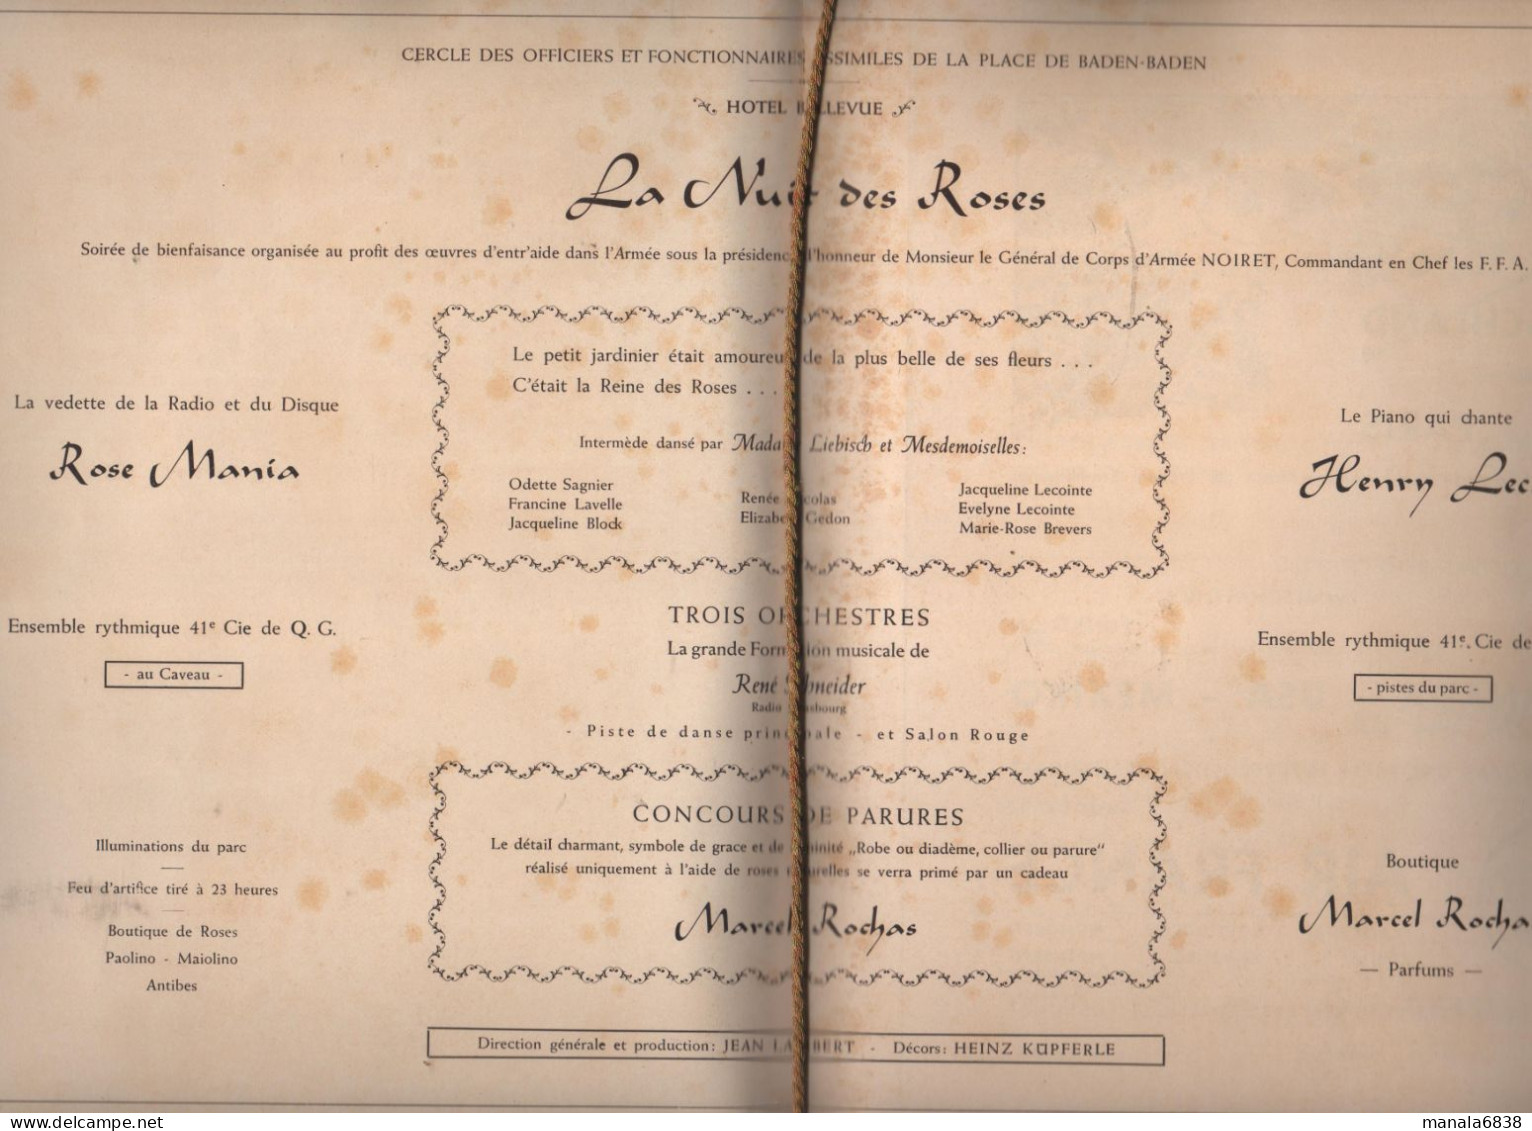 La Nuit des Roses programme 1952 Cercle Officiers Baden Baden Casino publicités à identifier